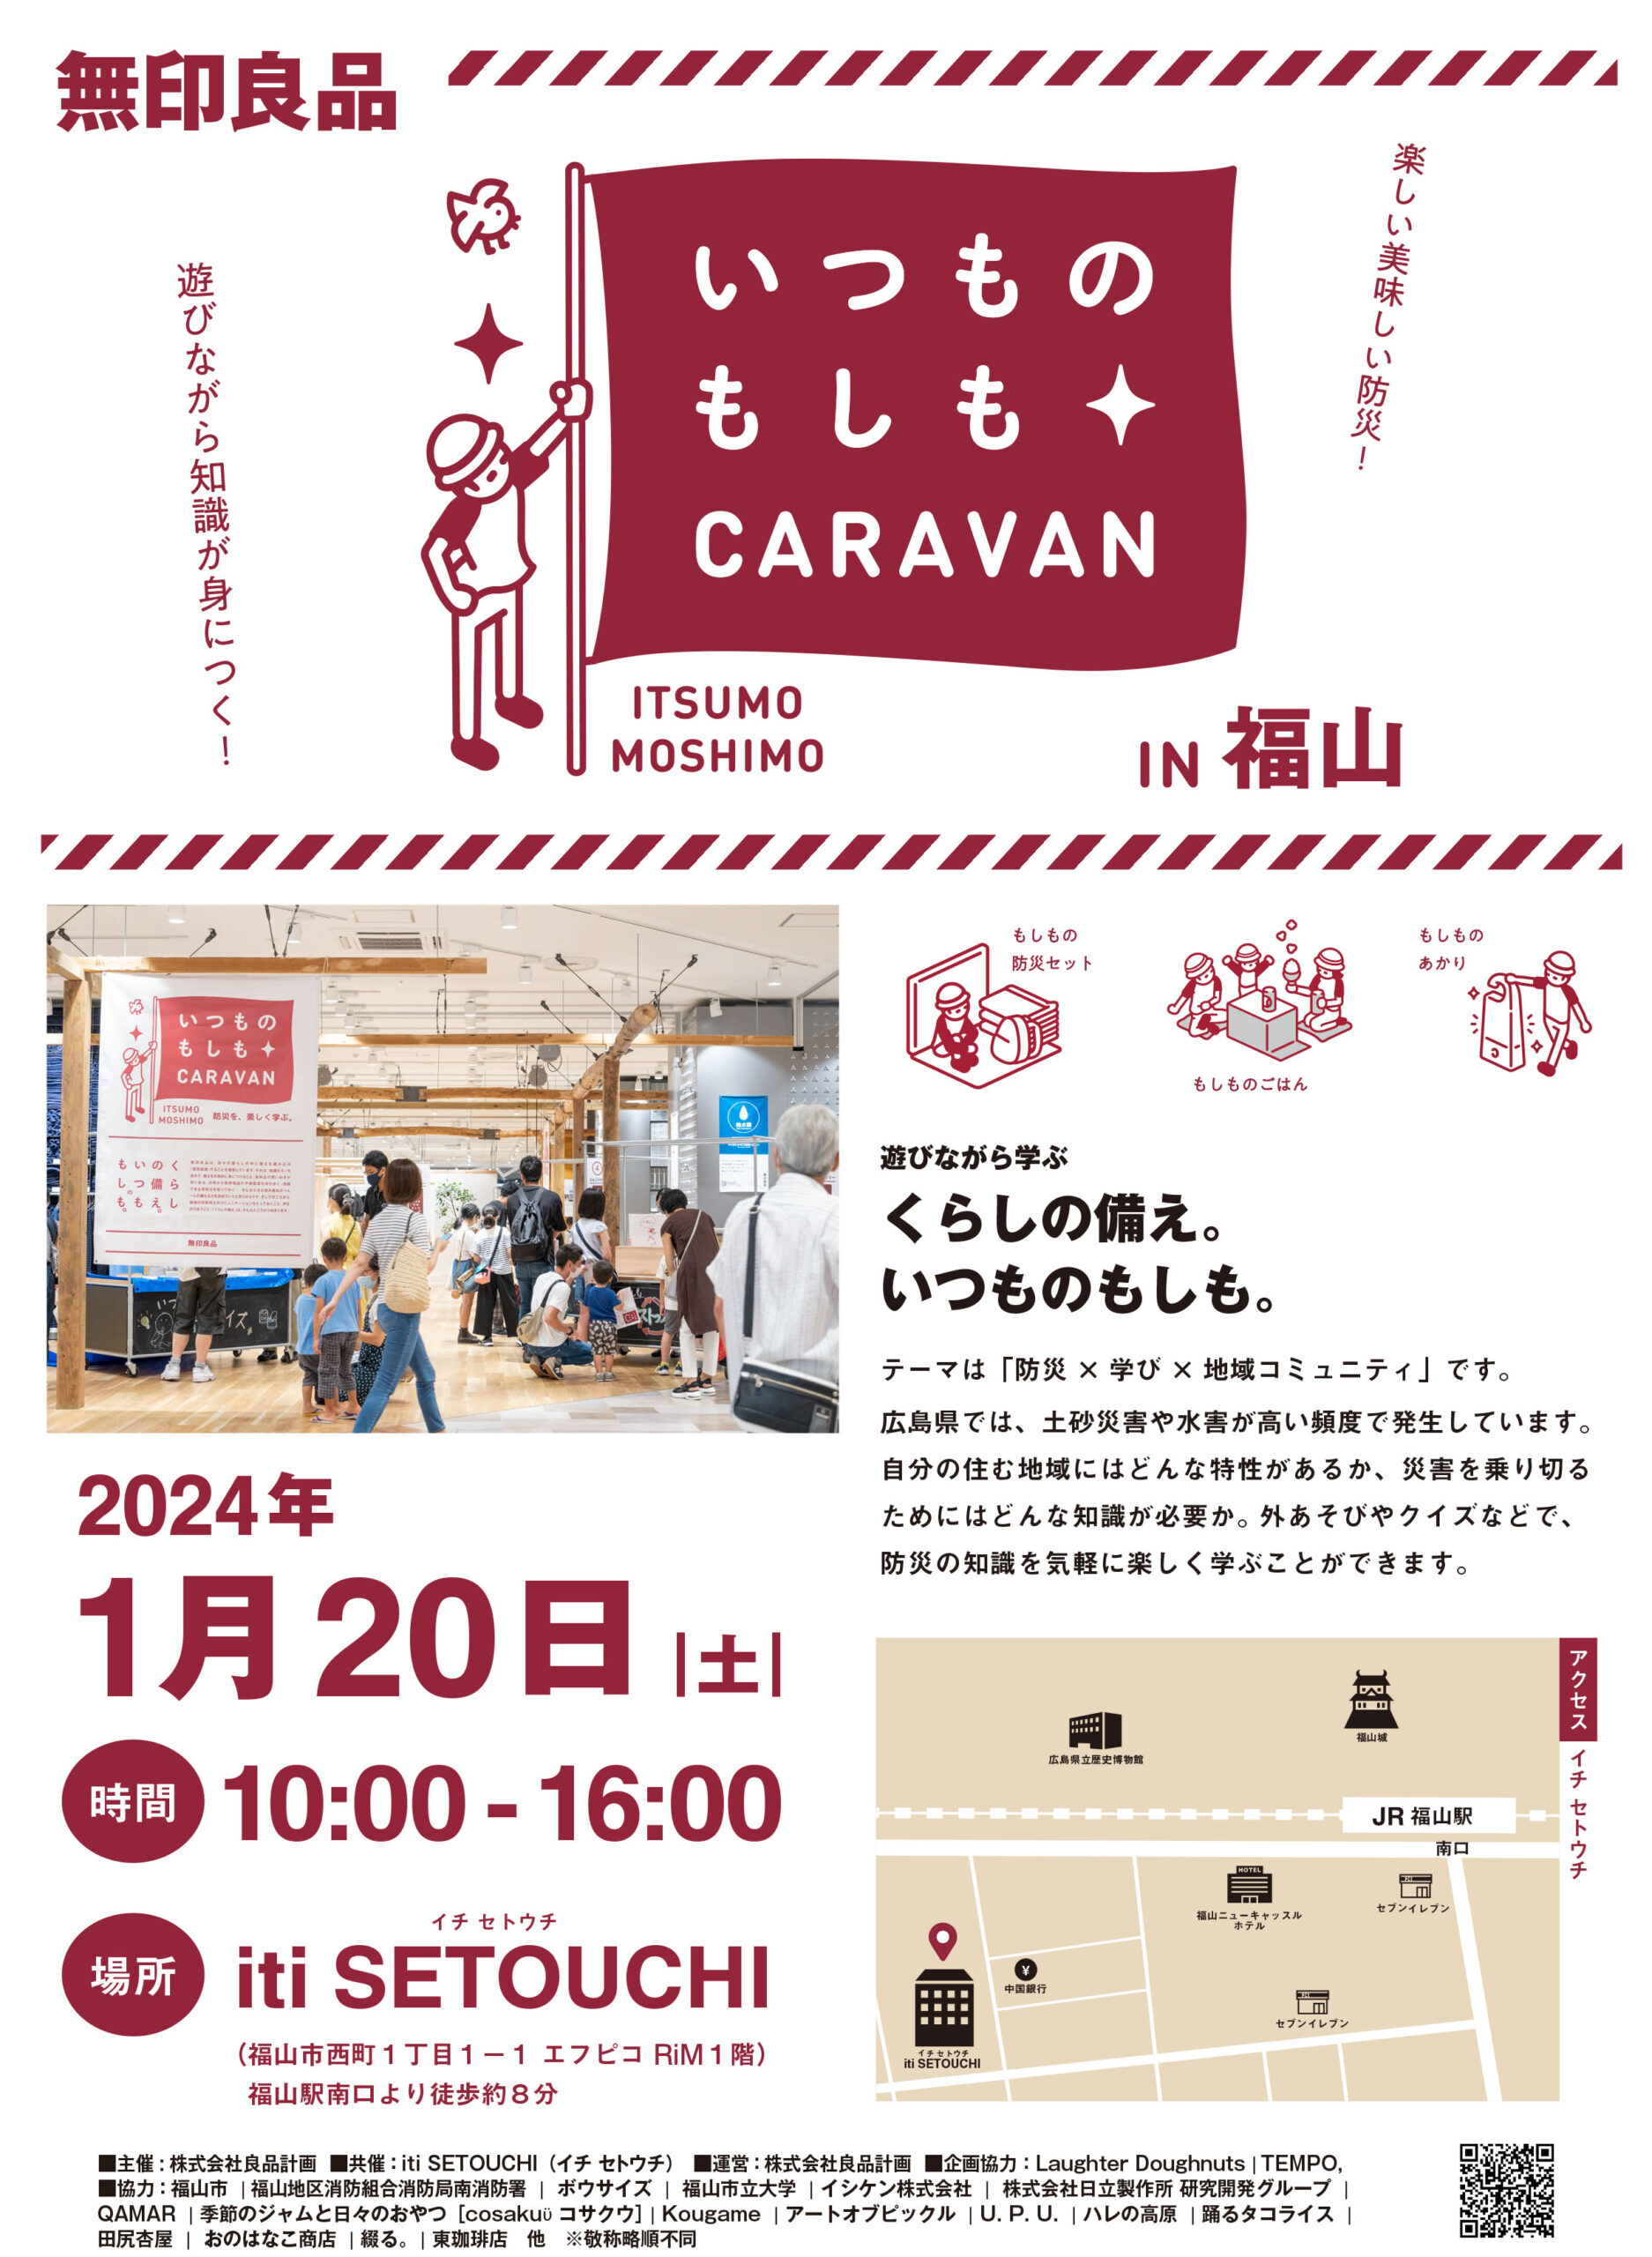 無印良品・防災イベント「いつものもしも CARAVAN in 福山」 1/20sat開催